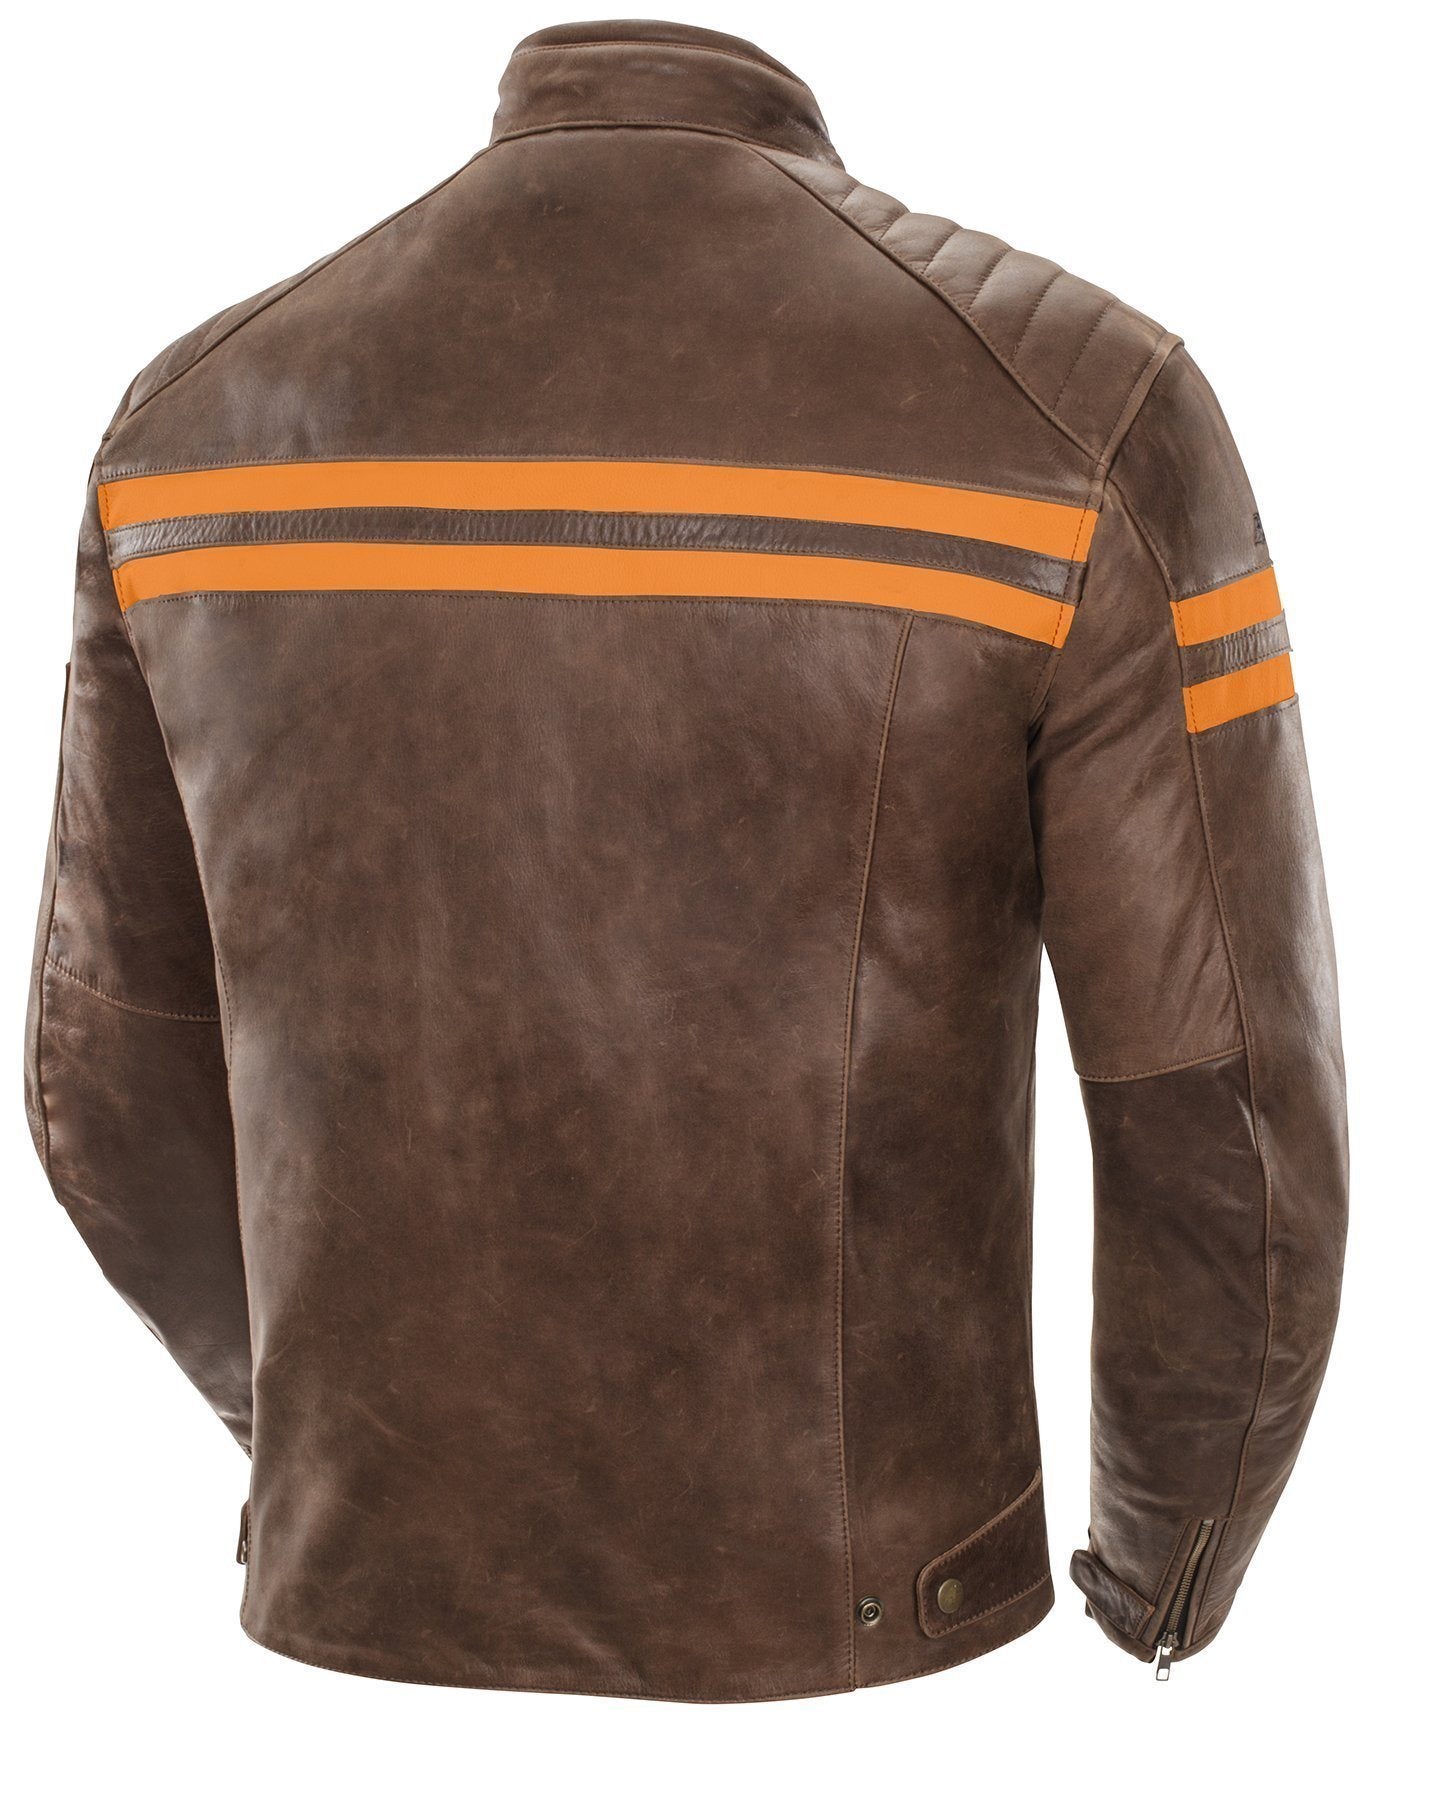 Joe Rocket 'Classic 92' Mens Brown/Orange Leather Motorcycle Jacket